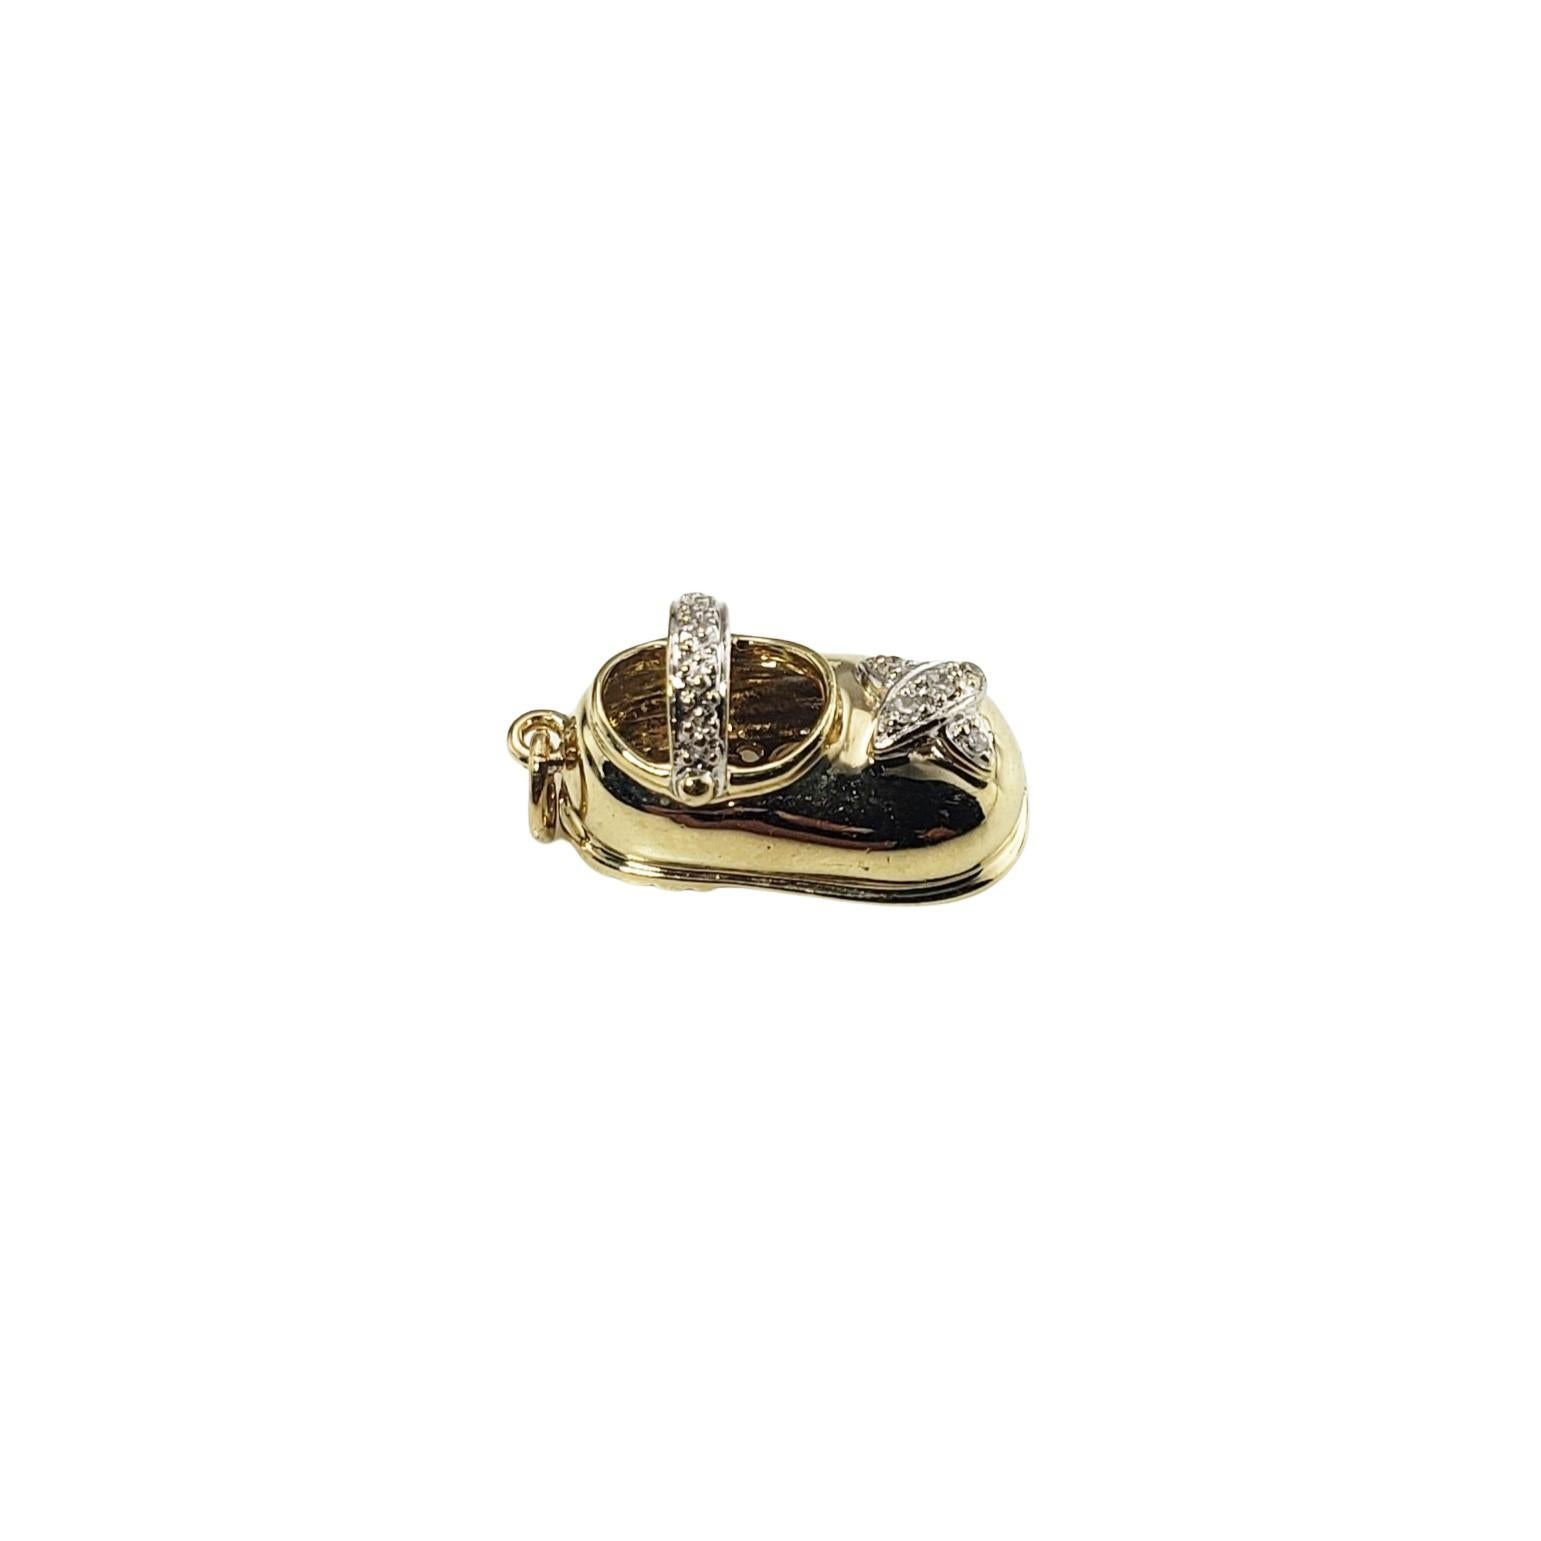 Feiern Sie die ersten Schritte Ihres Babys! Dieser reizende 3D-Charme verfügt über fünf runde Diamanten im Brillantschliff, die in wunderschön detailliertes 14-karätiges Gelbgold gefasst sind.

Ungefähres Gesamtgewicht der Diamanten: 03